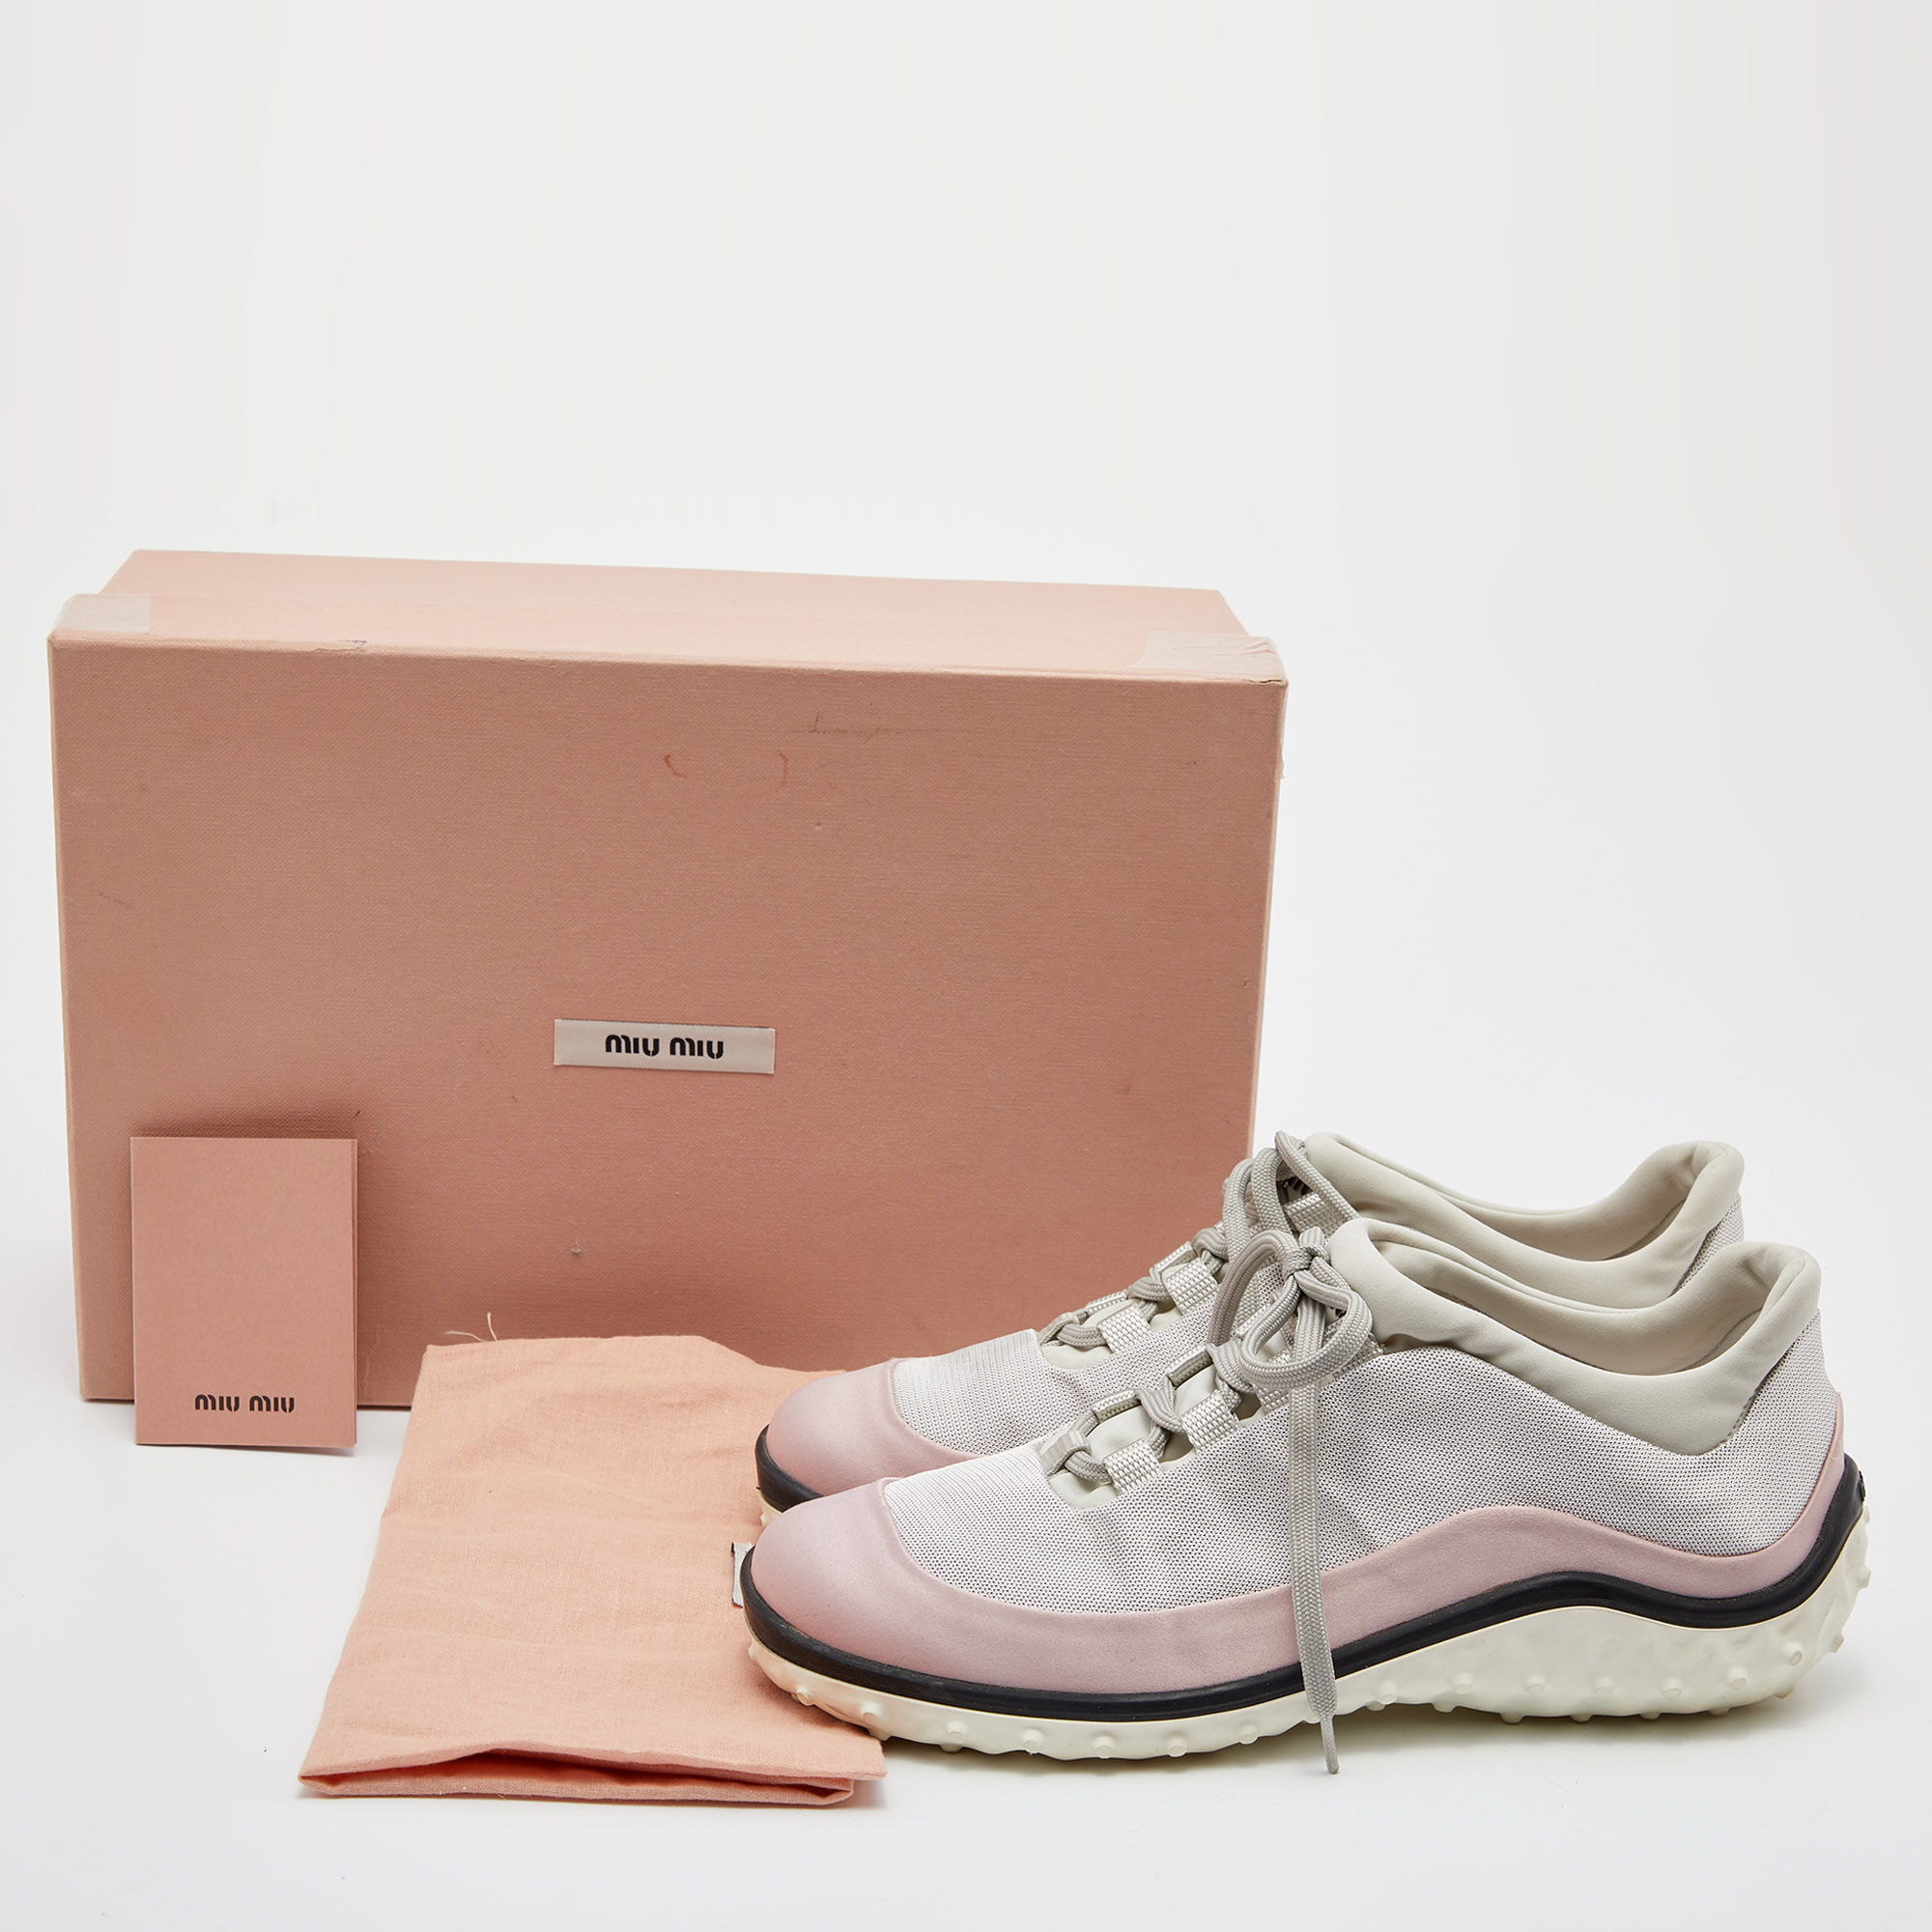 Miu Miu Pink/Grey Satin And Fabric Low Top Sneakers Size 36